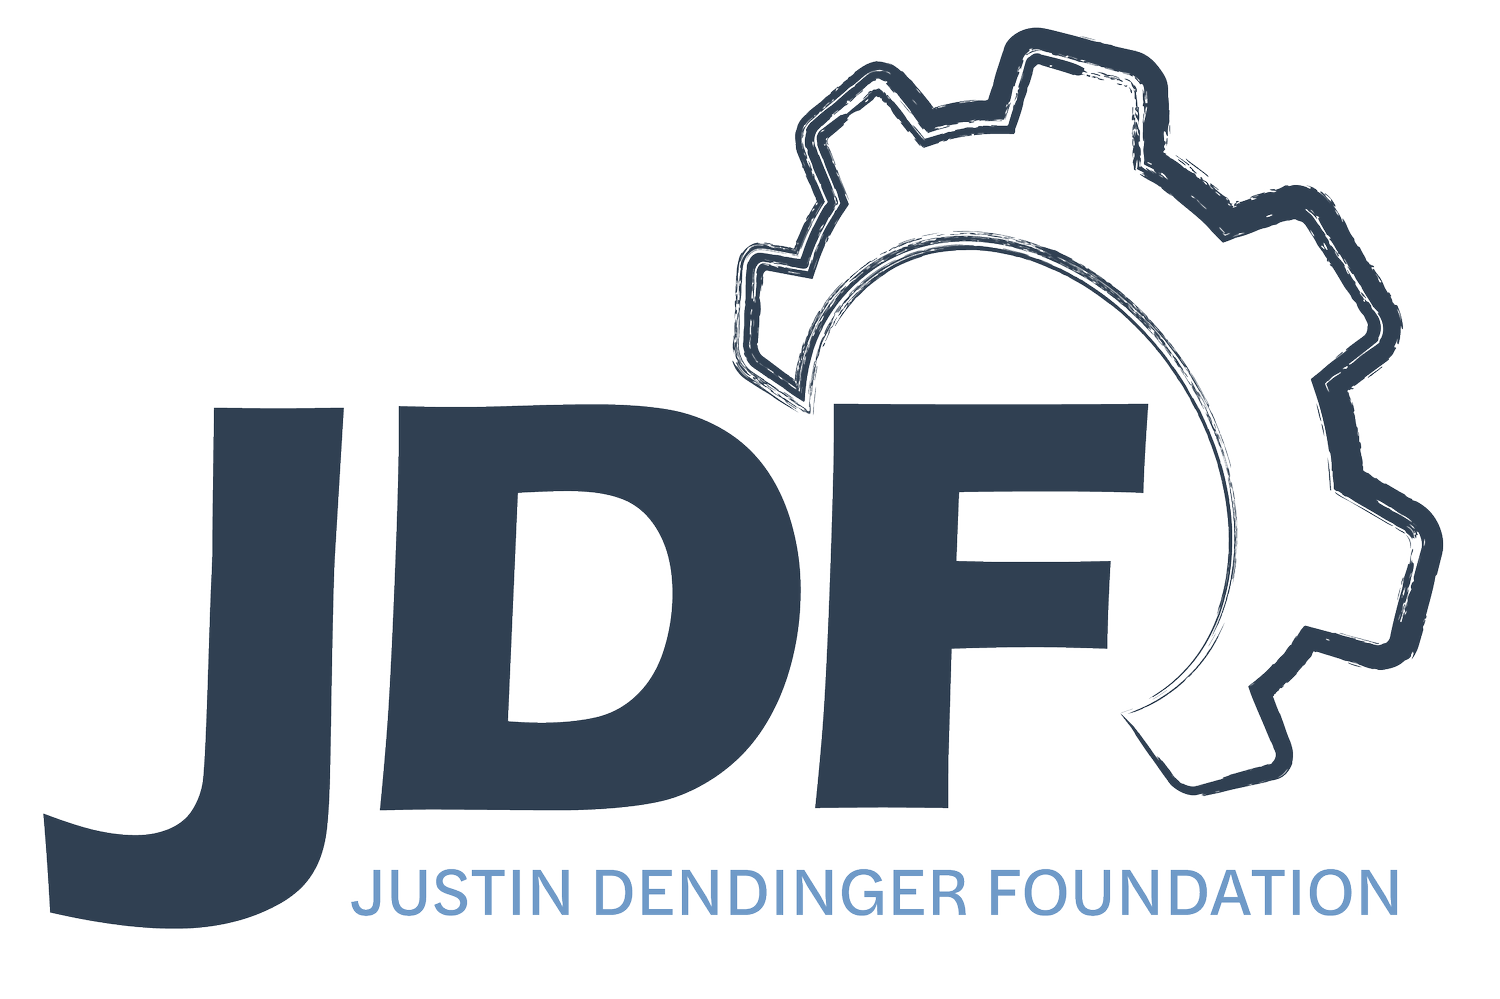 Justin Dendinger Foundation